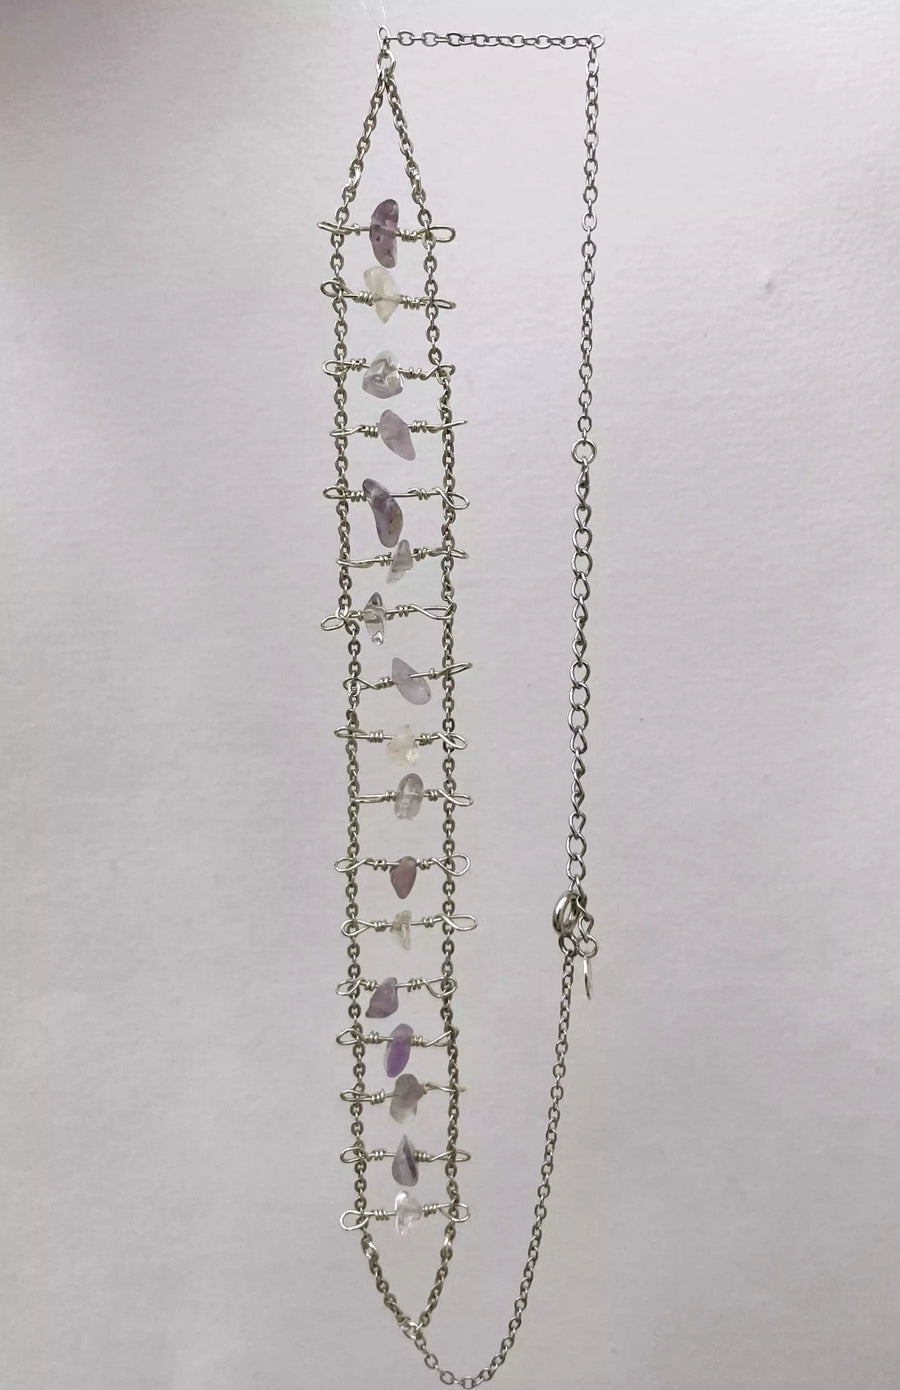 Photo du collier unique fait main sur fond blanc. On le voit en entier, à la verticale. Ce collier pourrait ressembler à la structure d'une échelle.